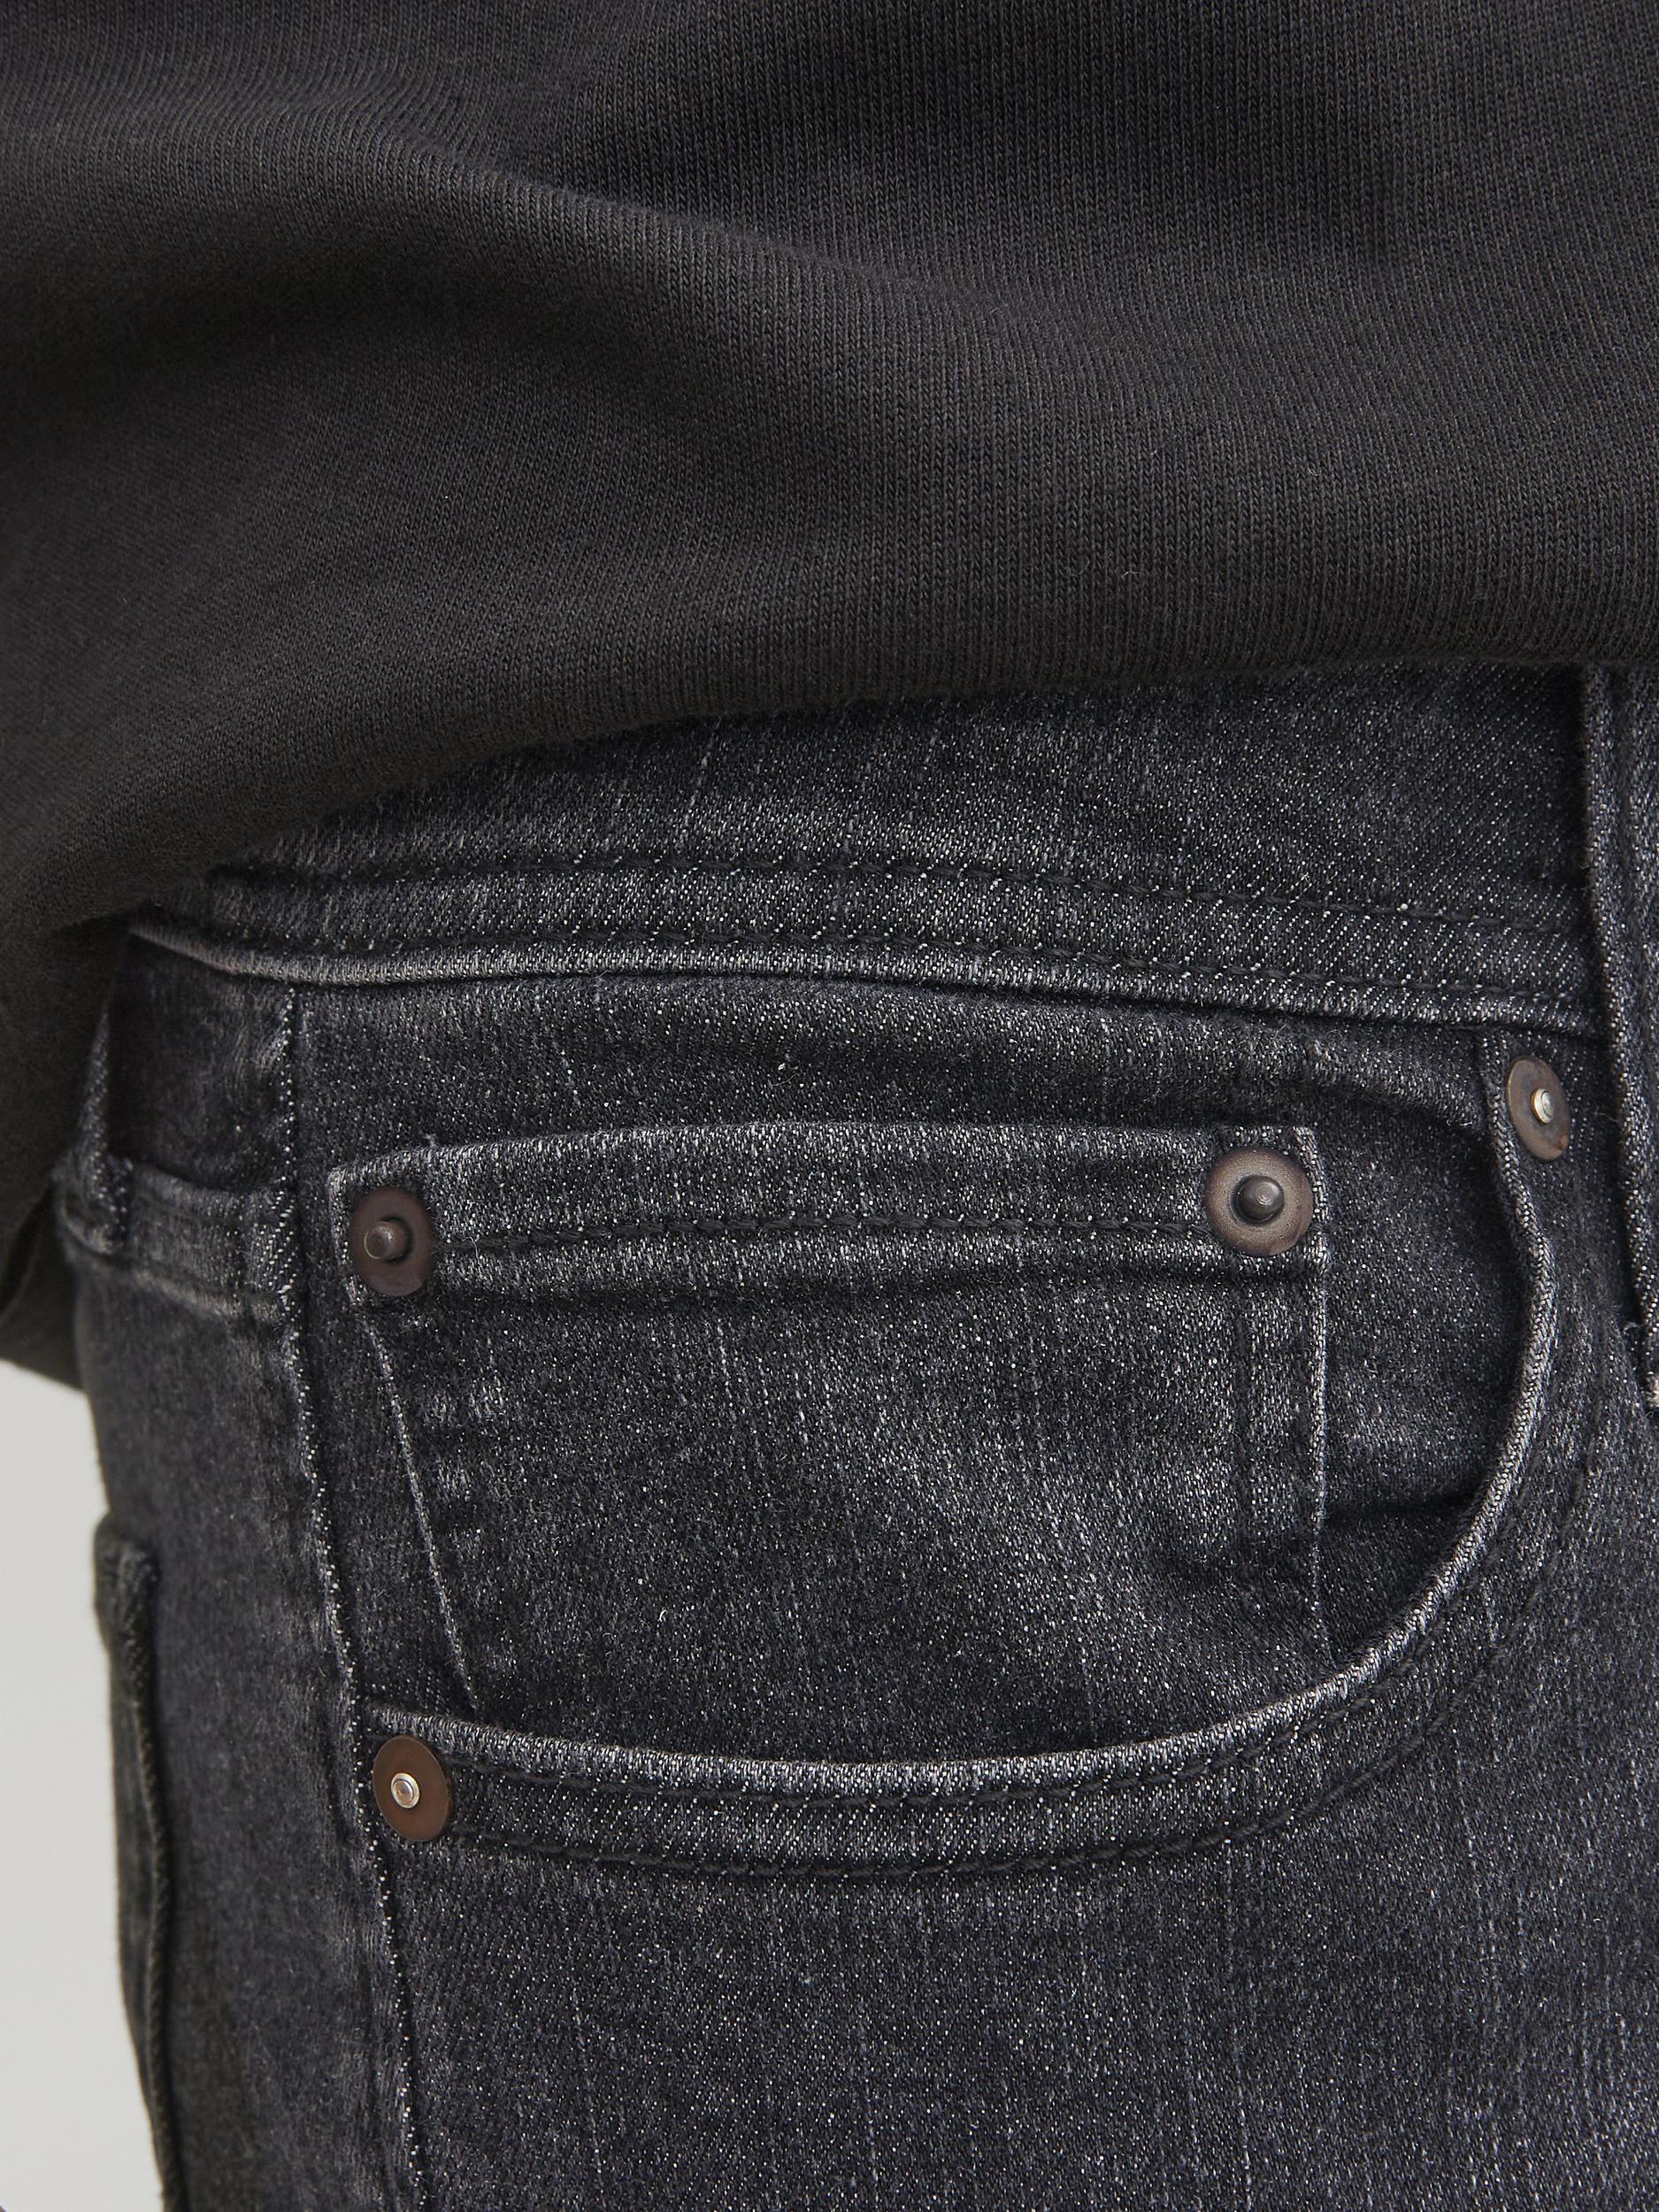 Jack & Jones Glenn Original 270 Slim Fit Jeans Black Denim - Raw Menswear